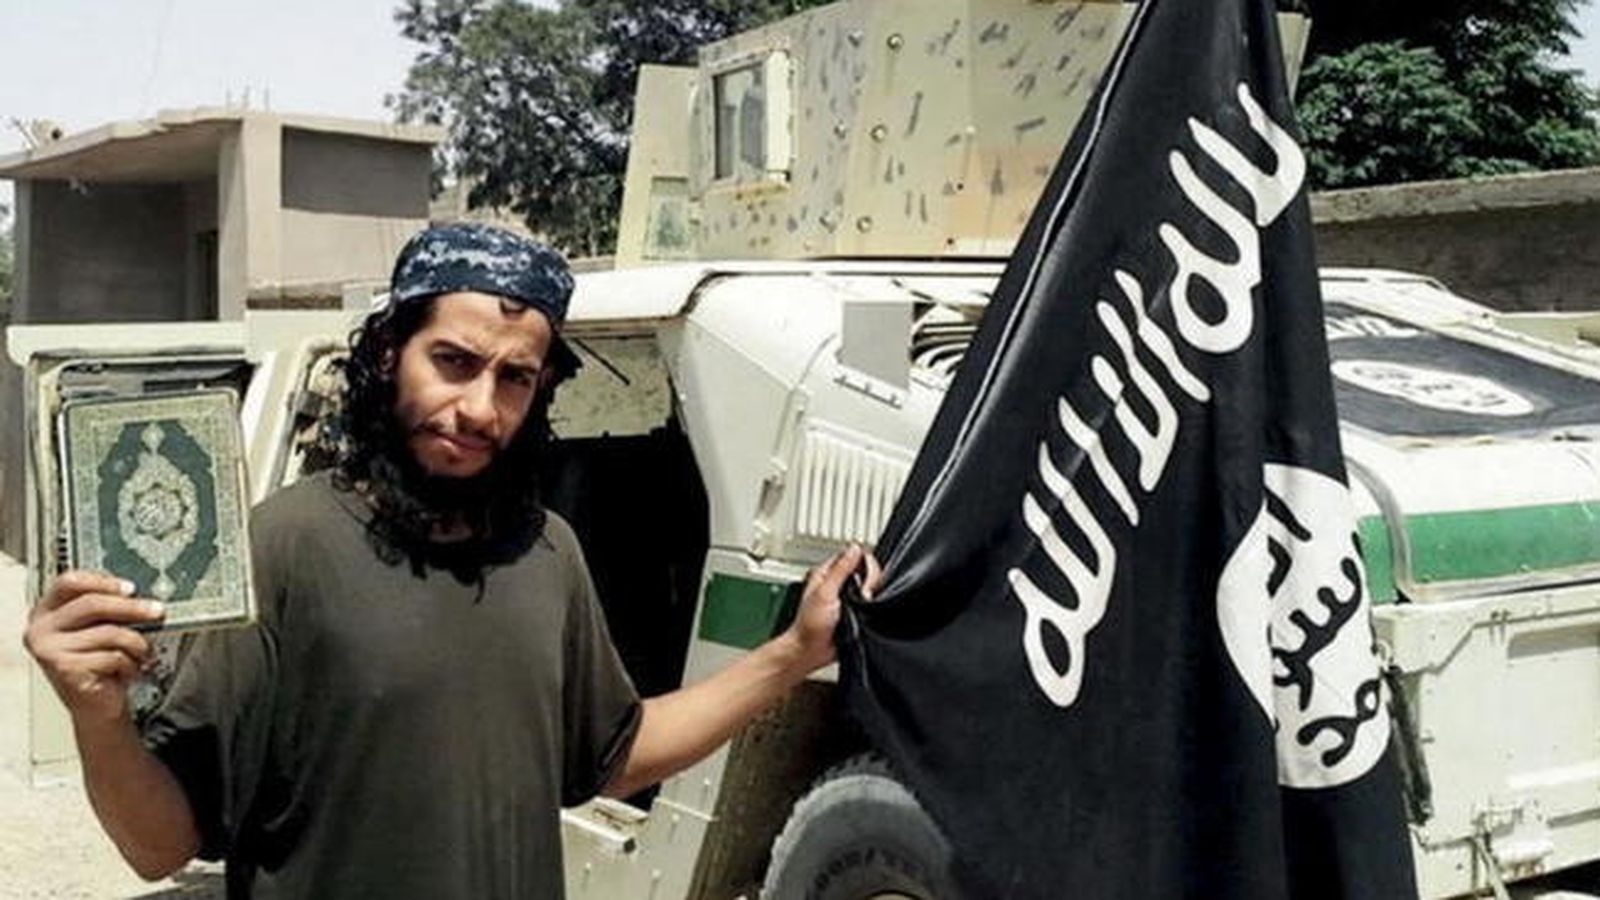 Foto: Foto de Abdelhamid Abaaoud publicada en la revista online Dabiq asociada a ISIS. Se cree que puede ser uno de los terroristas detrás de los atentados de París. (Foto: Reuters)